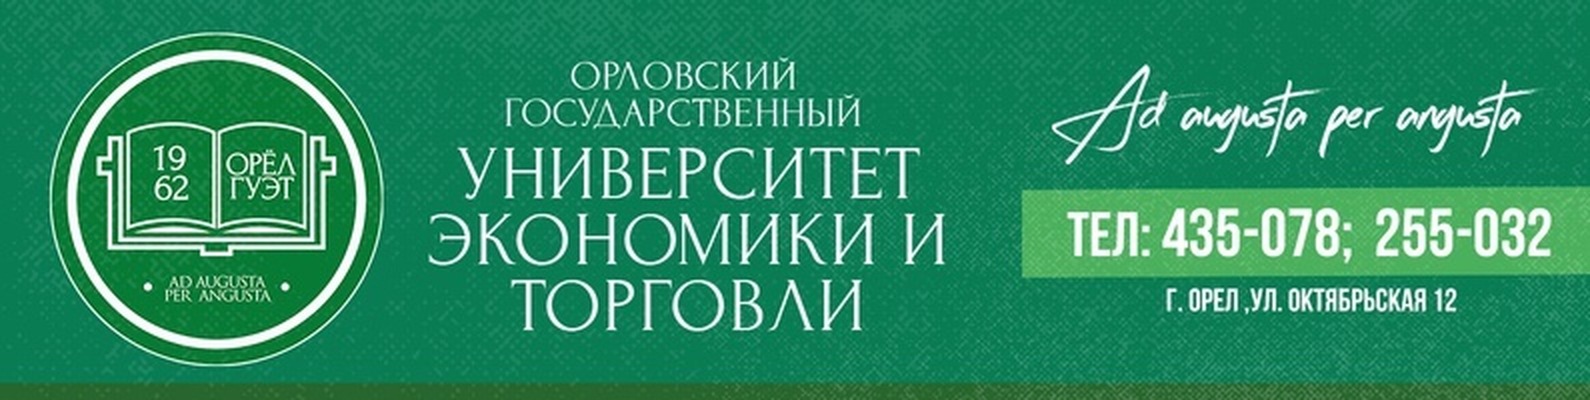 Заявка на дистанционное обучение в Орловский государственный университет экономики и торговли